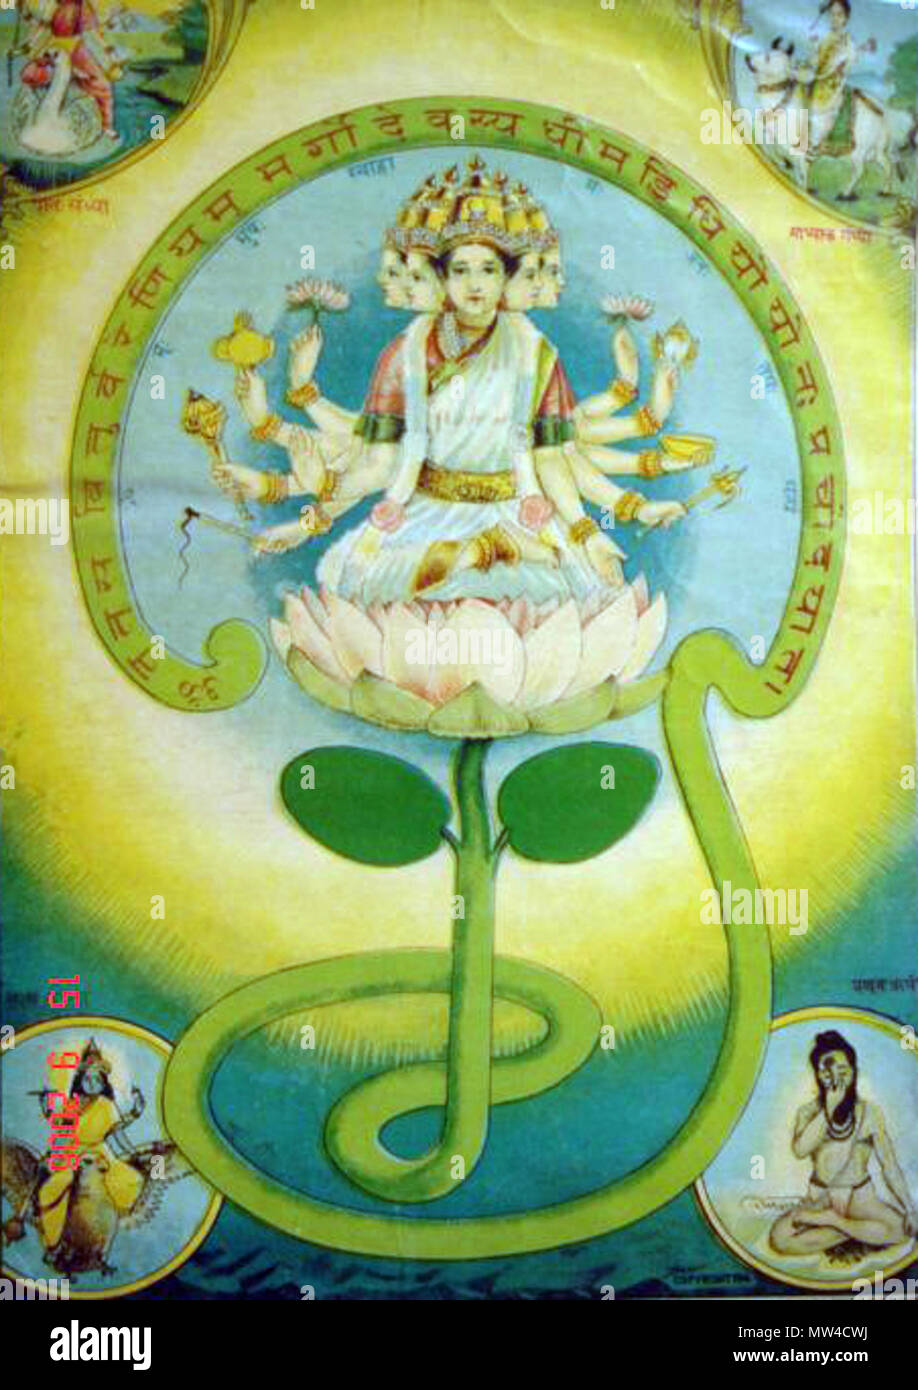 . Inglese: "Gayatri mantra' è stato personificato in una dea, sebbene relativamente oscuri e altamente textualized uno, quasi sempre accompagnato dal suo mantra Sanscrito (bazaar arte, 1910's) Fonte: ebay, nov. 2006 "Secondo i testi sacri, la Gayatri è Brahma, Gayatri è Vishnu, Gayatri è Shiva, Gayatri è Vedas. Gayatri più tardi è venuto a essere personificato come una dea. Lei è un altro consorte del dio Brahma. Essa è indicata come avente cinque capi e di solito è seduto su un rosso lotus - questo significa ricchezza. Le quattro teste di Gayatri rappresentano i quattro Vedas, la quinta testa rappresenta il al Foto Stock